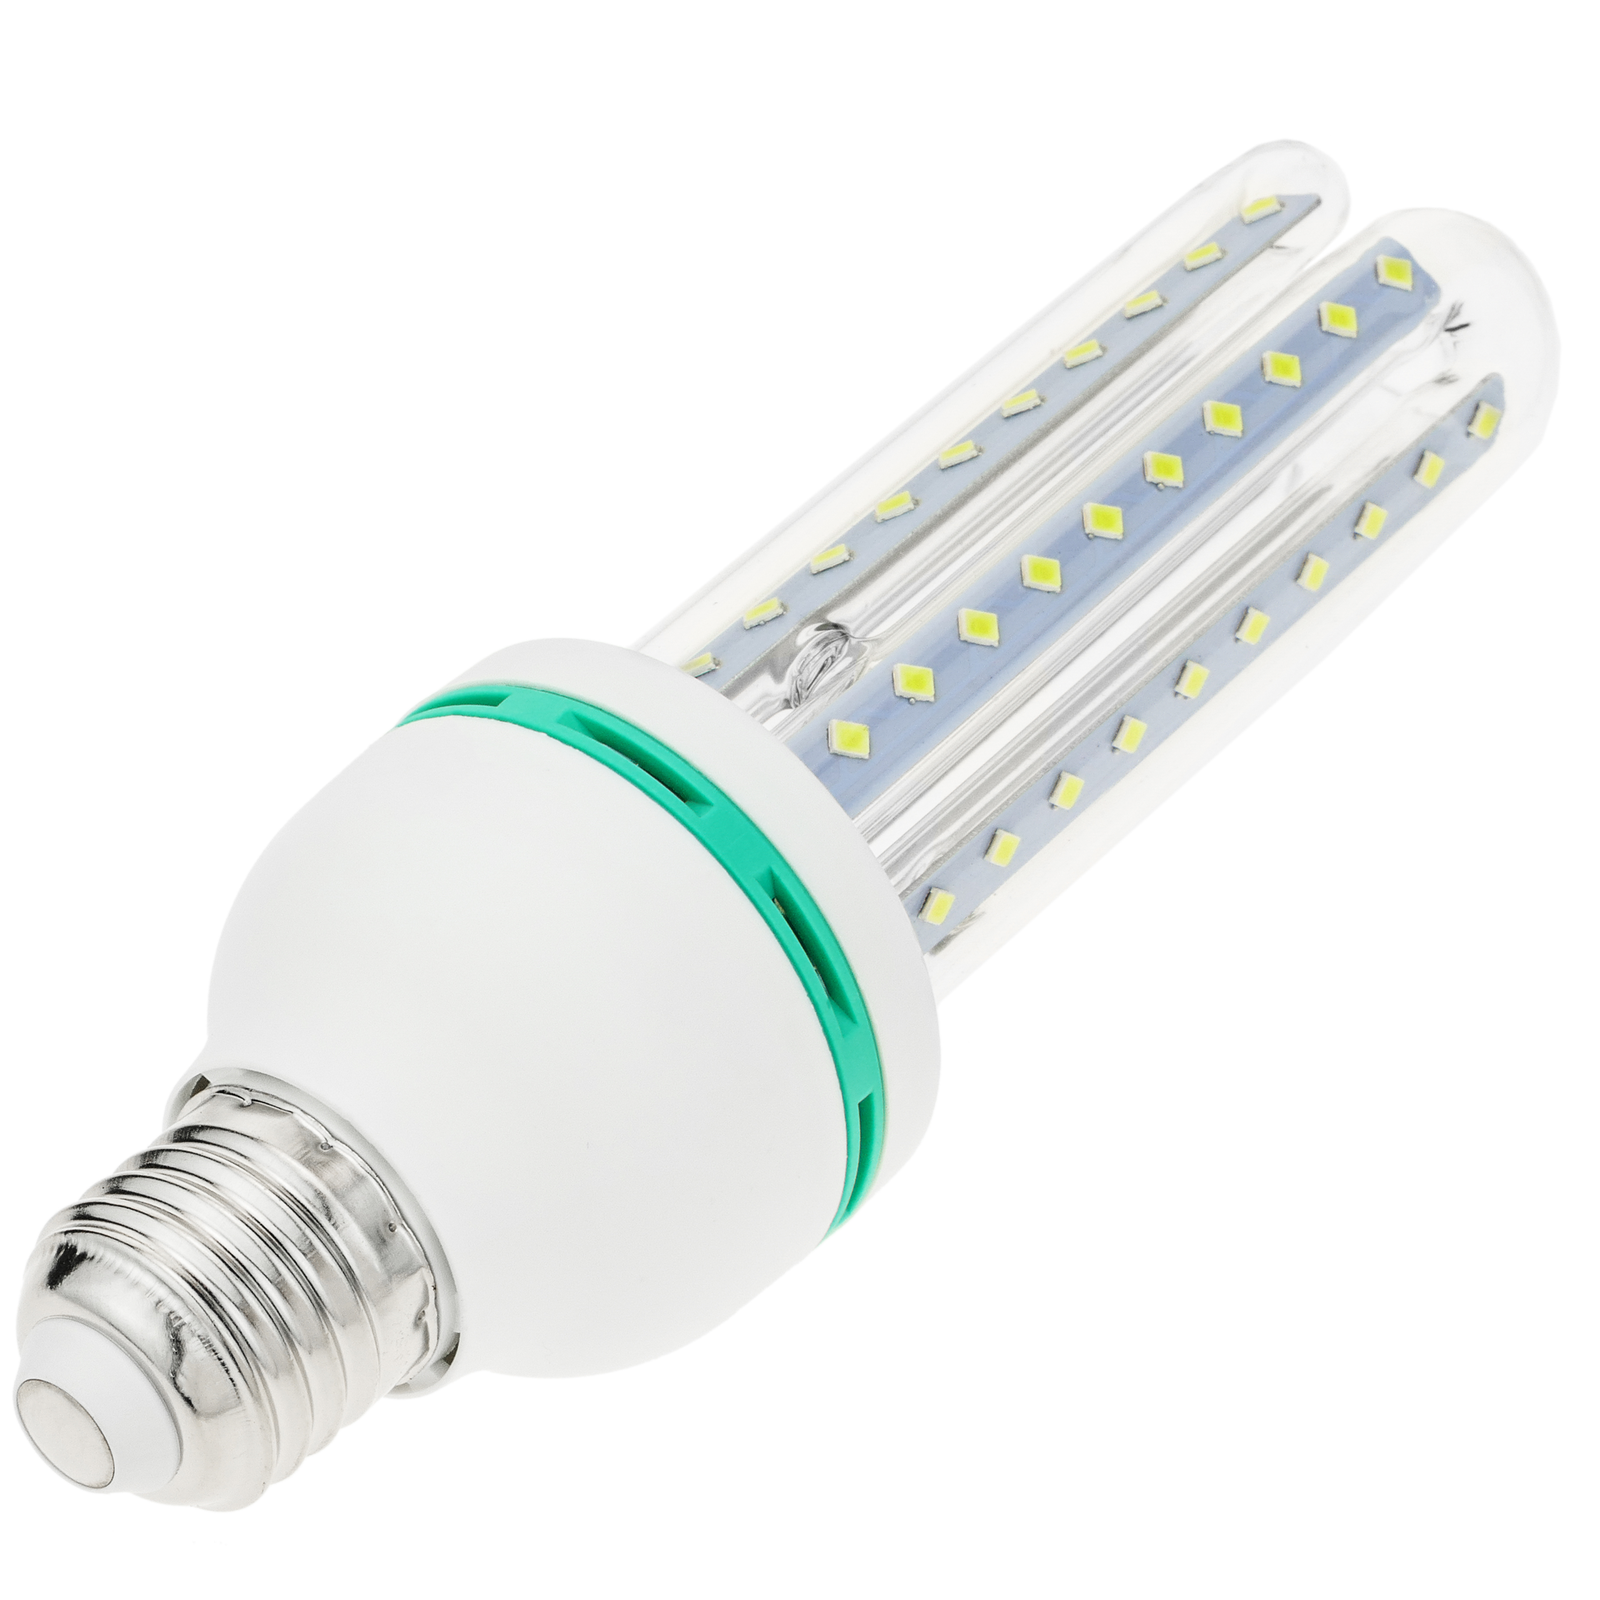 Ruban LED avec détecteur de mouvement, bande LED adhésive, 3 mètres blanc  chaud, 3 500 K 2835 LED, pour armoire, cuisine